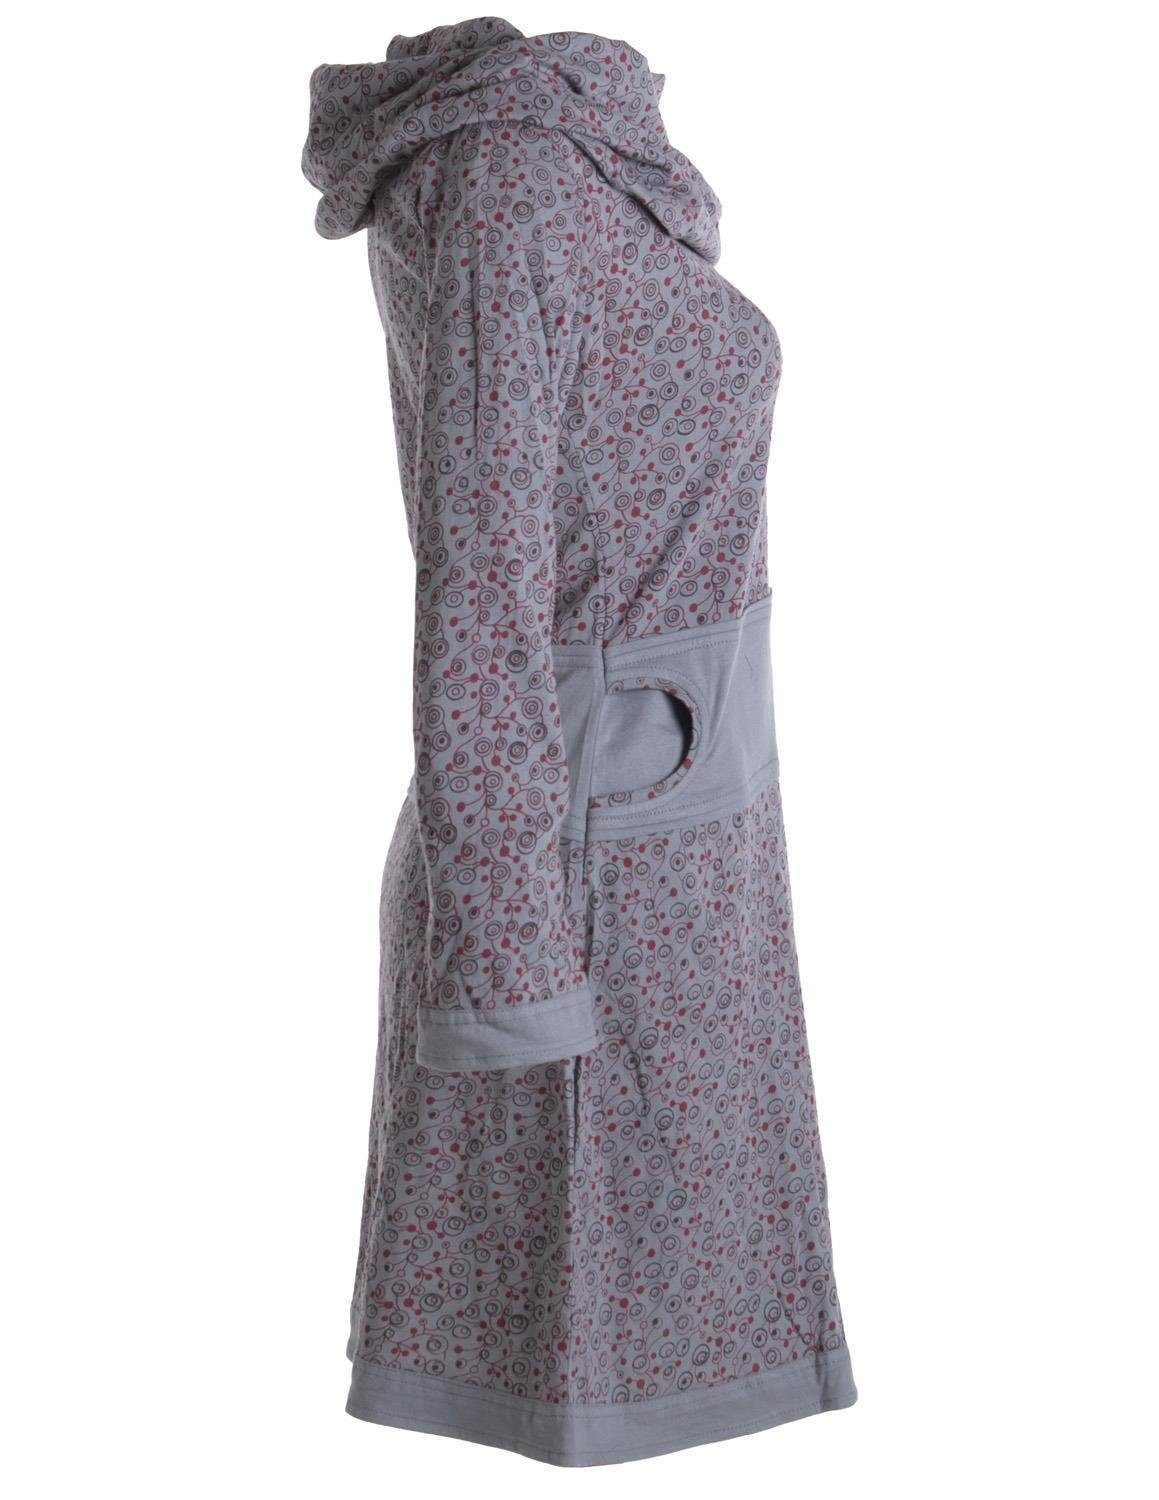 Vishes Jerseykleid mit Schalkragen aus Kleid Boho, grau Ethno, Style Goa, Baumwolle Bedrucktes Hippie